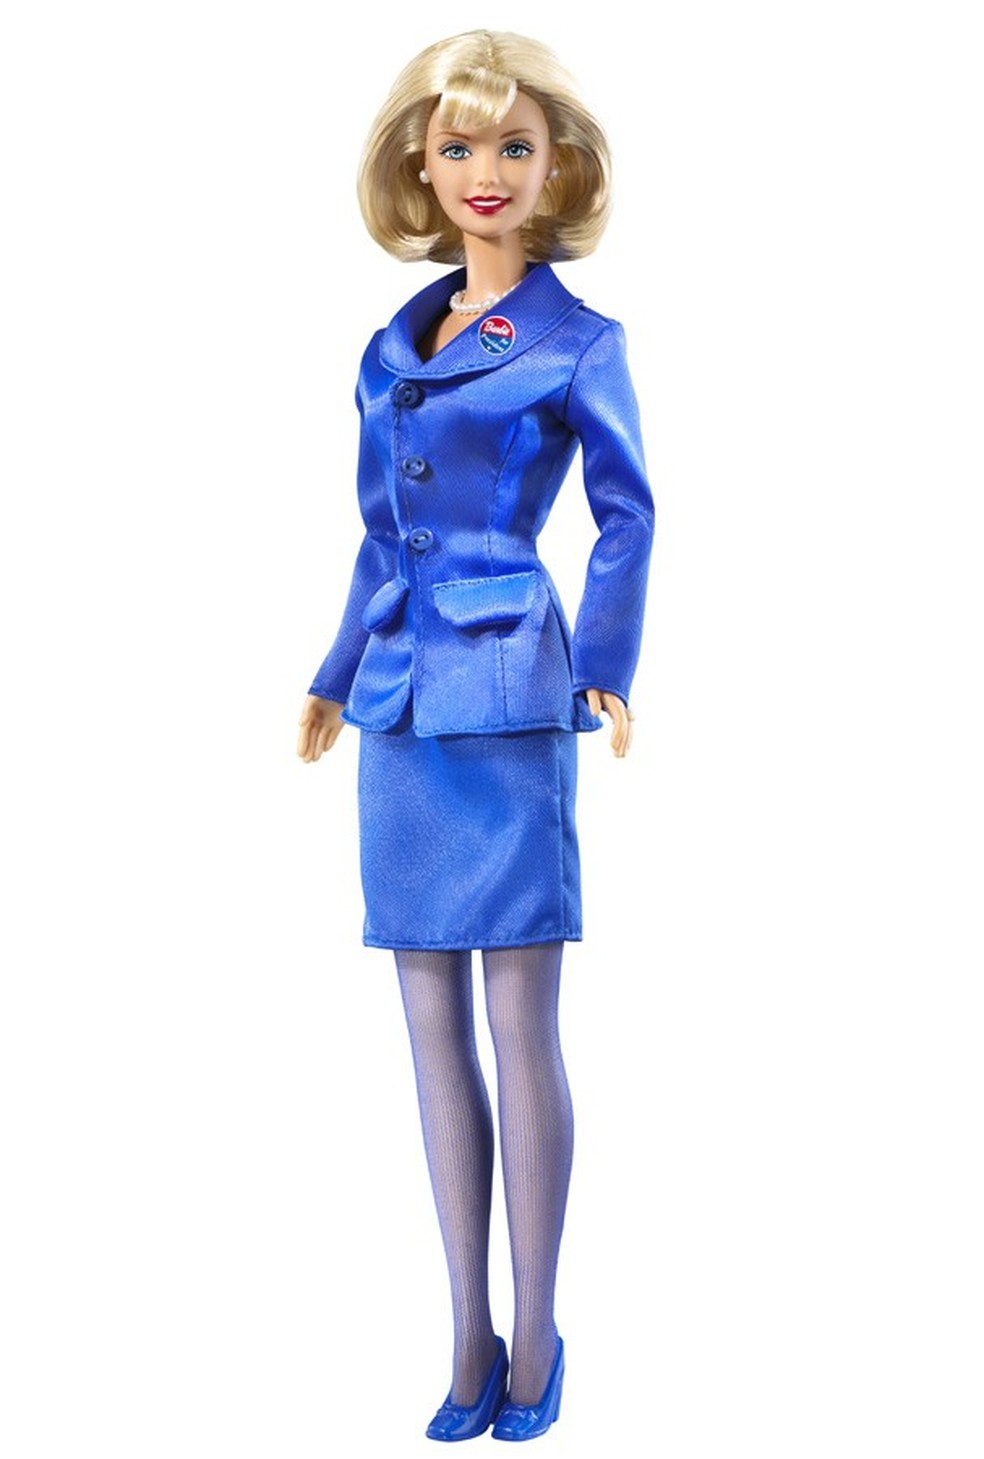 Olha a Barbie presidente que amor! Surgiu em 1992 (Foto: Divulgação) — Foto: Glamour